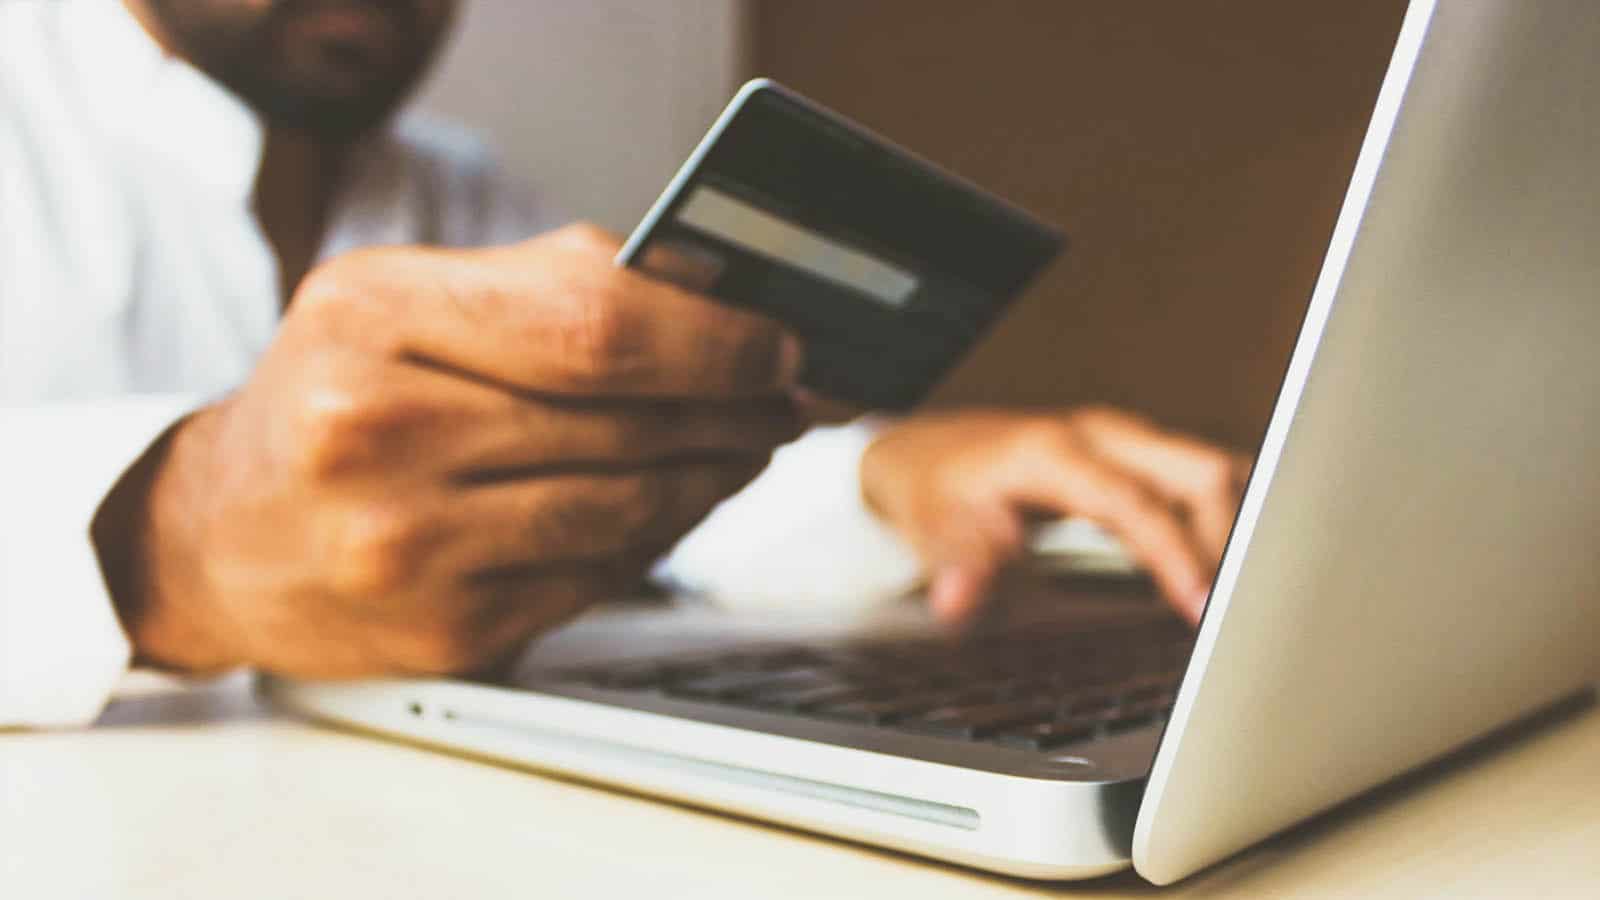 mua sắm trực tuyến bằng thẻ tín dụng